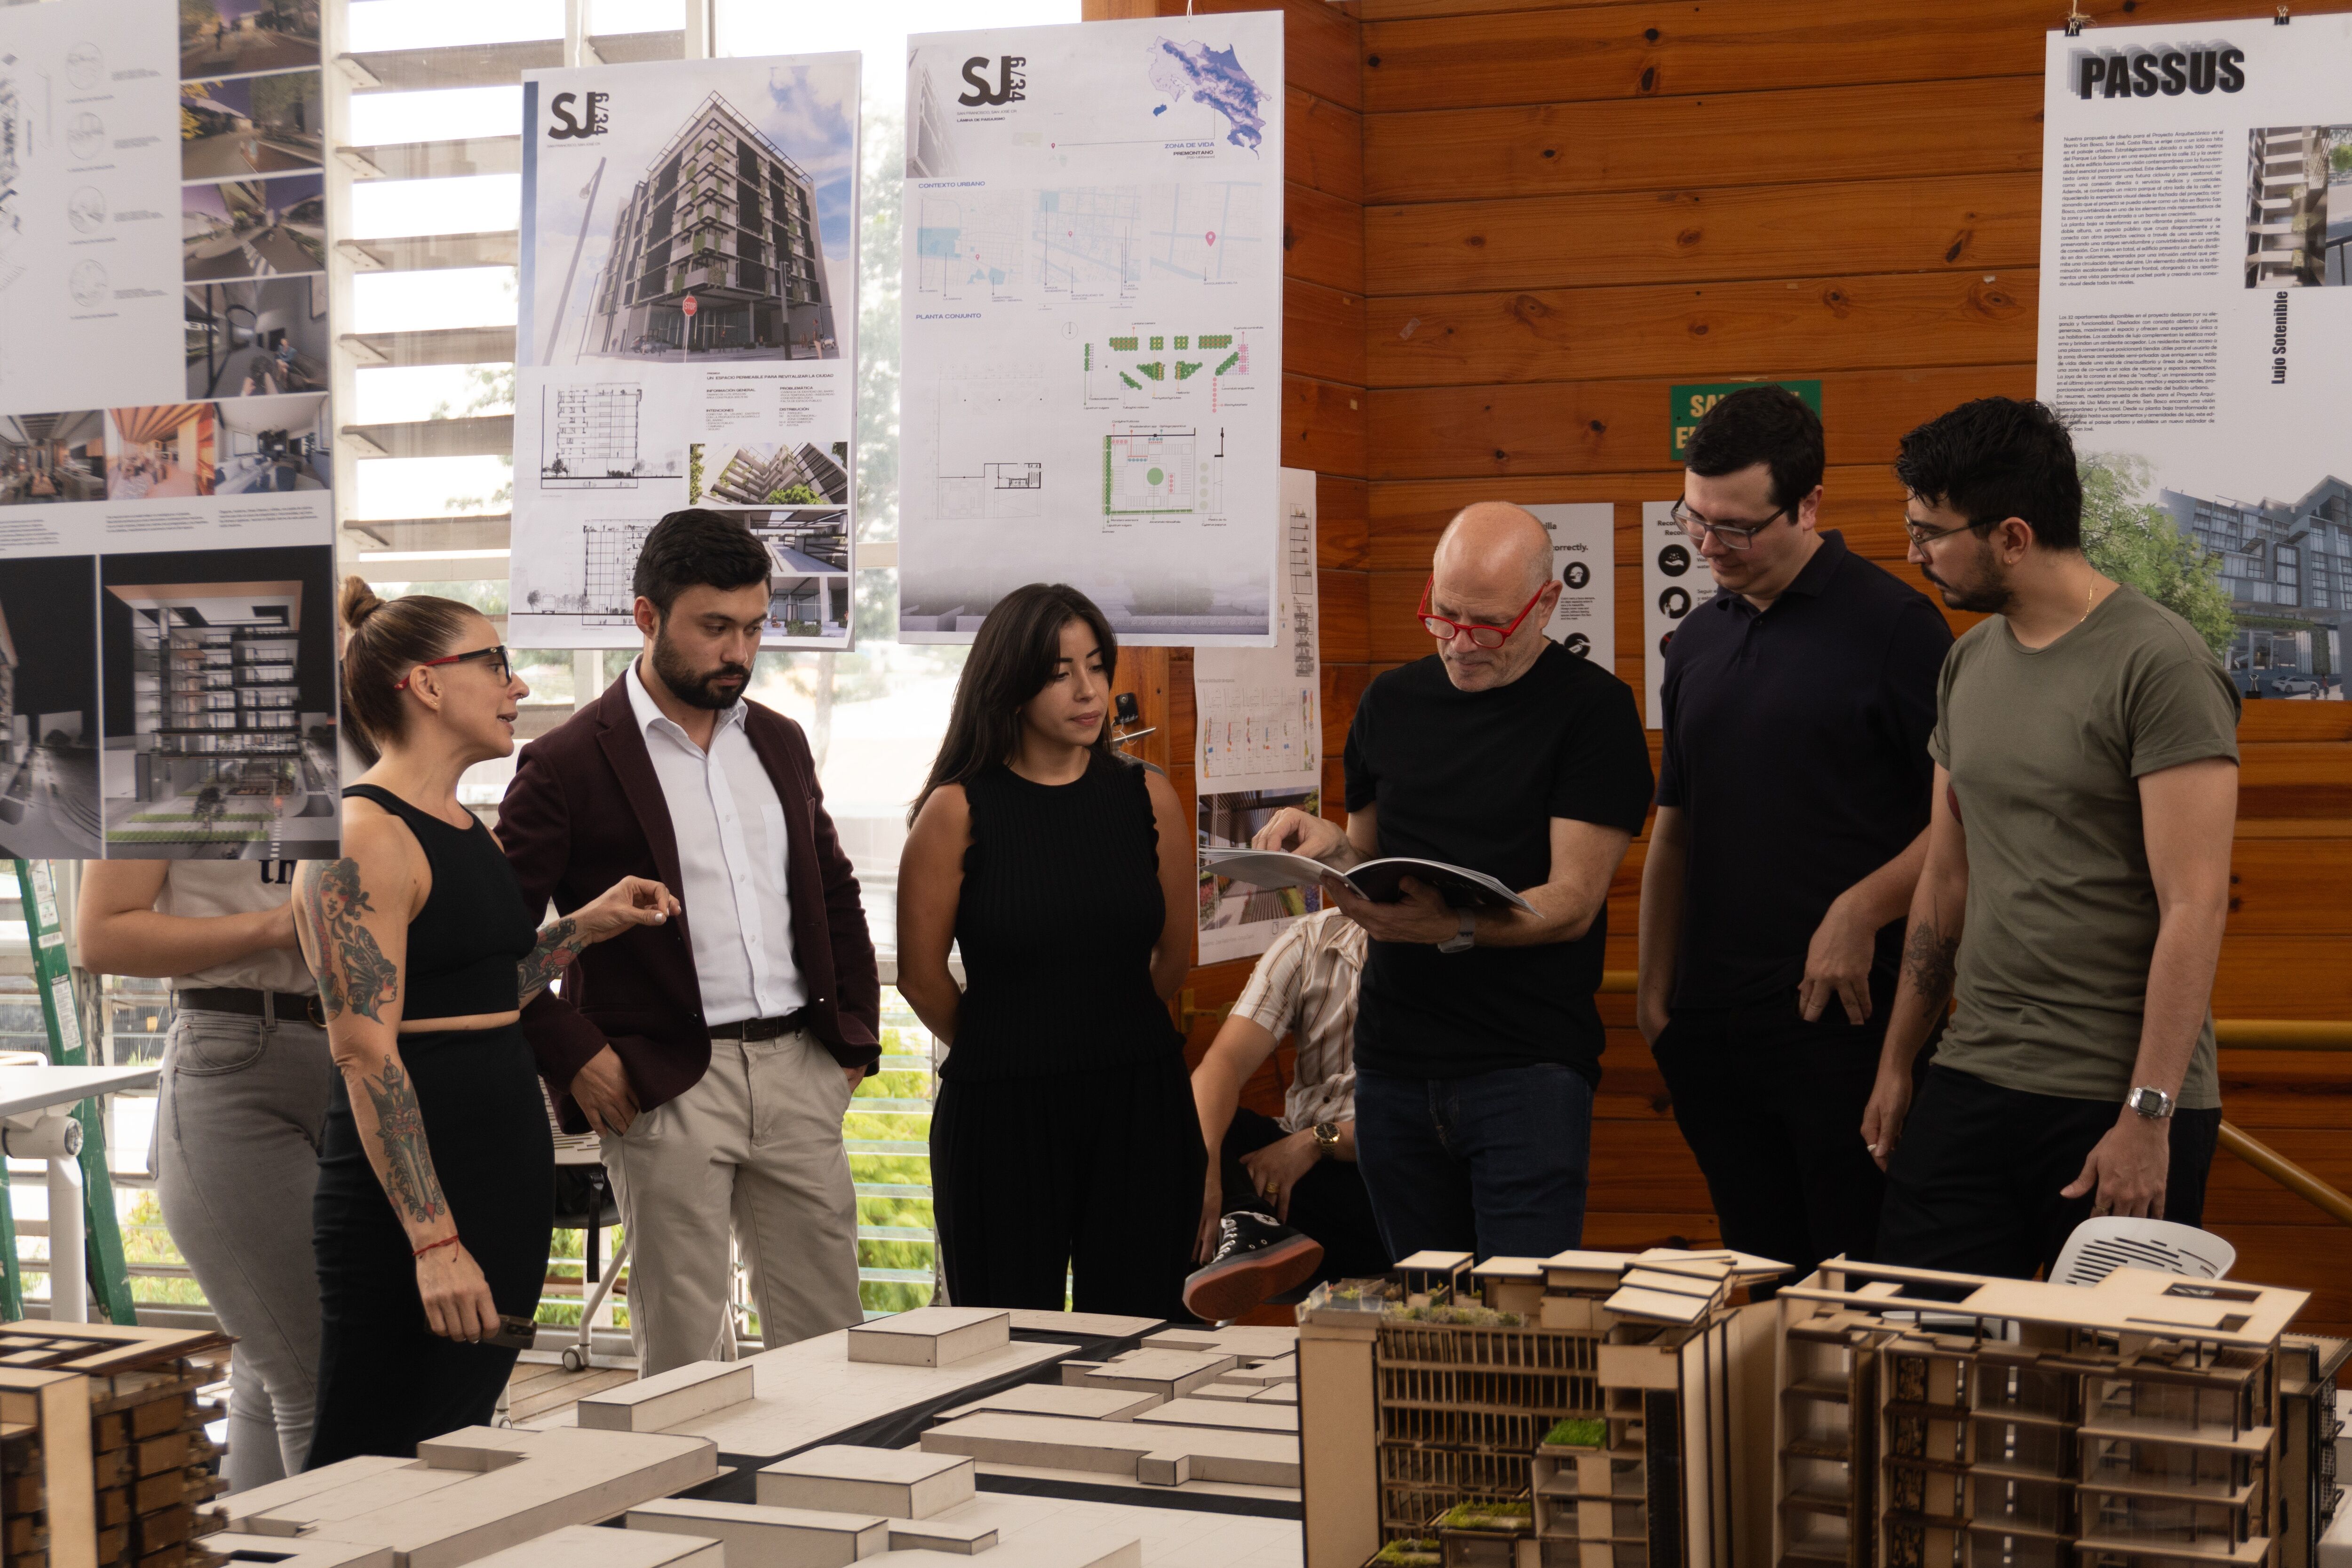 Grupo de arquitectos enfocados discutiendo detalles del proyecto alrededor de modelos a escala y planos de diseño en un espacio de trabajo iluminado.